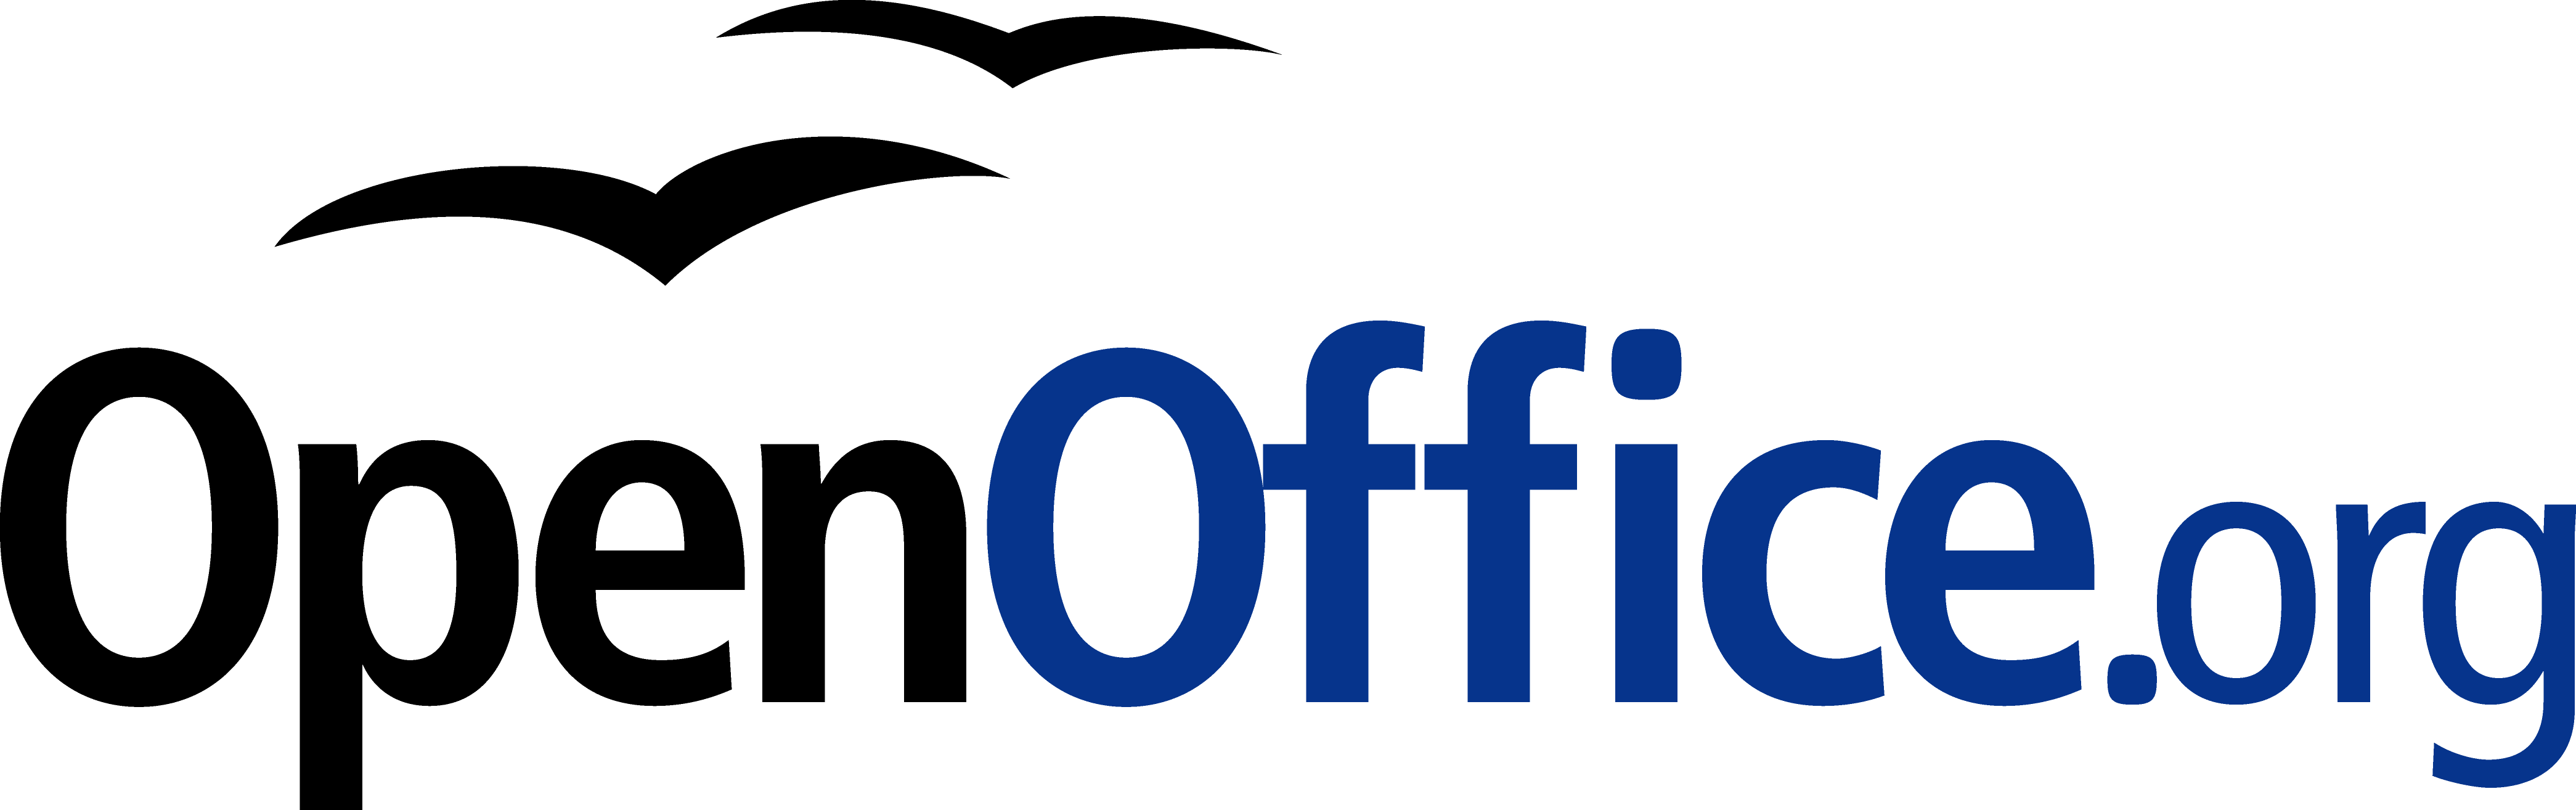 OpenOffice Logo